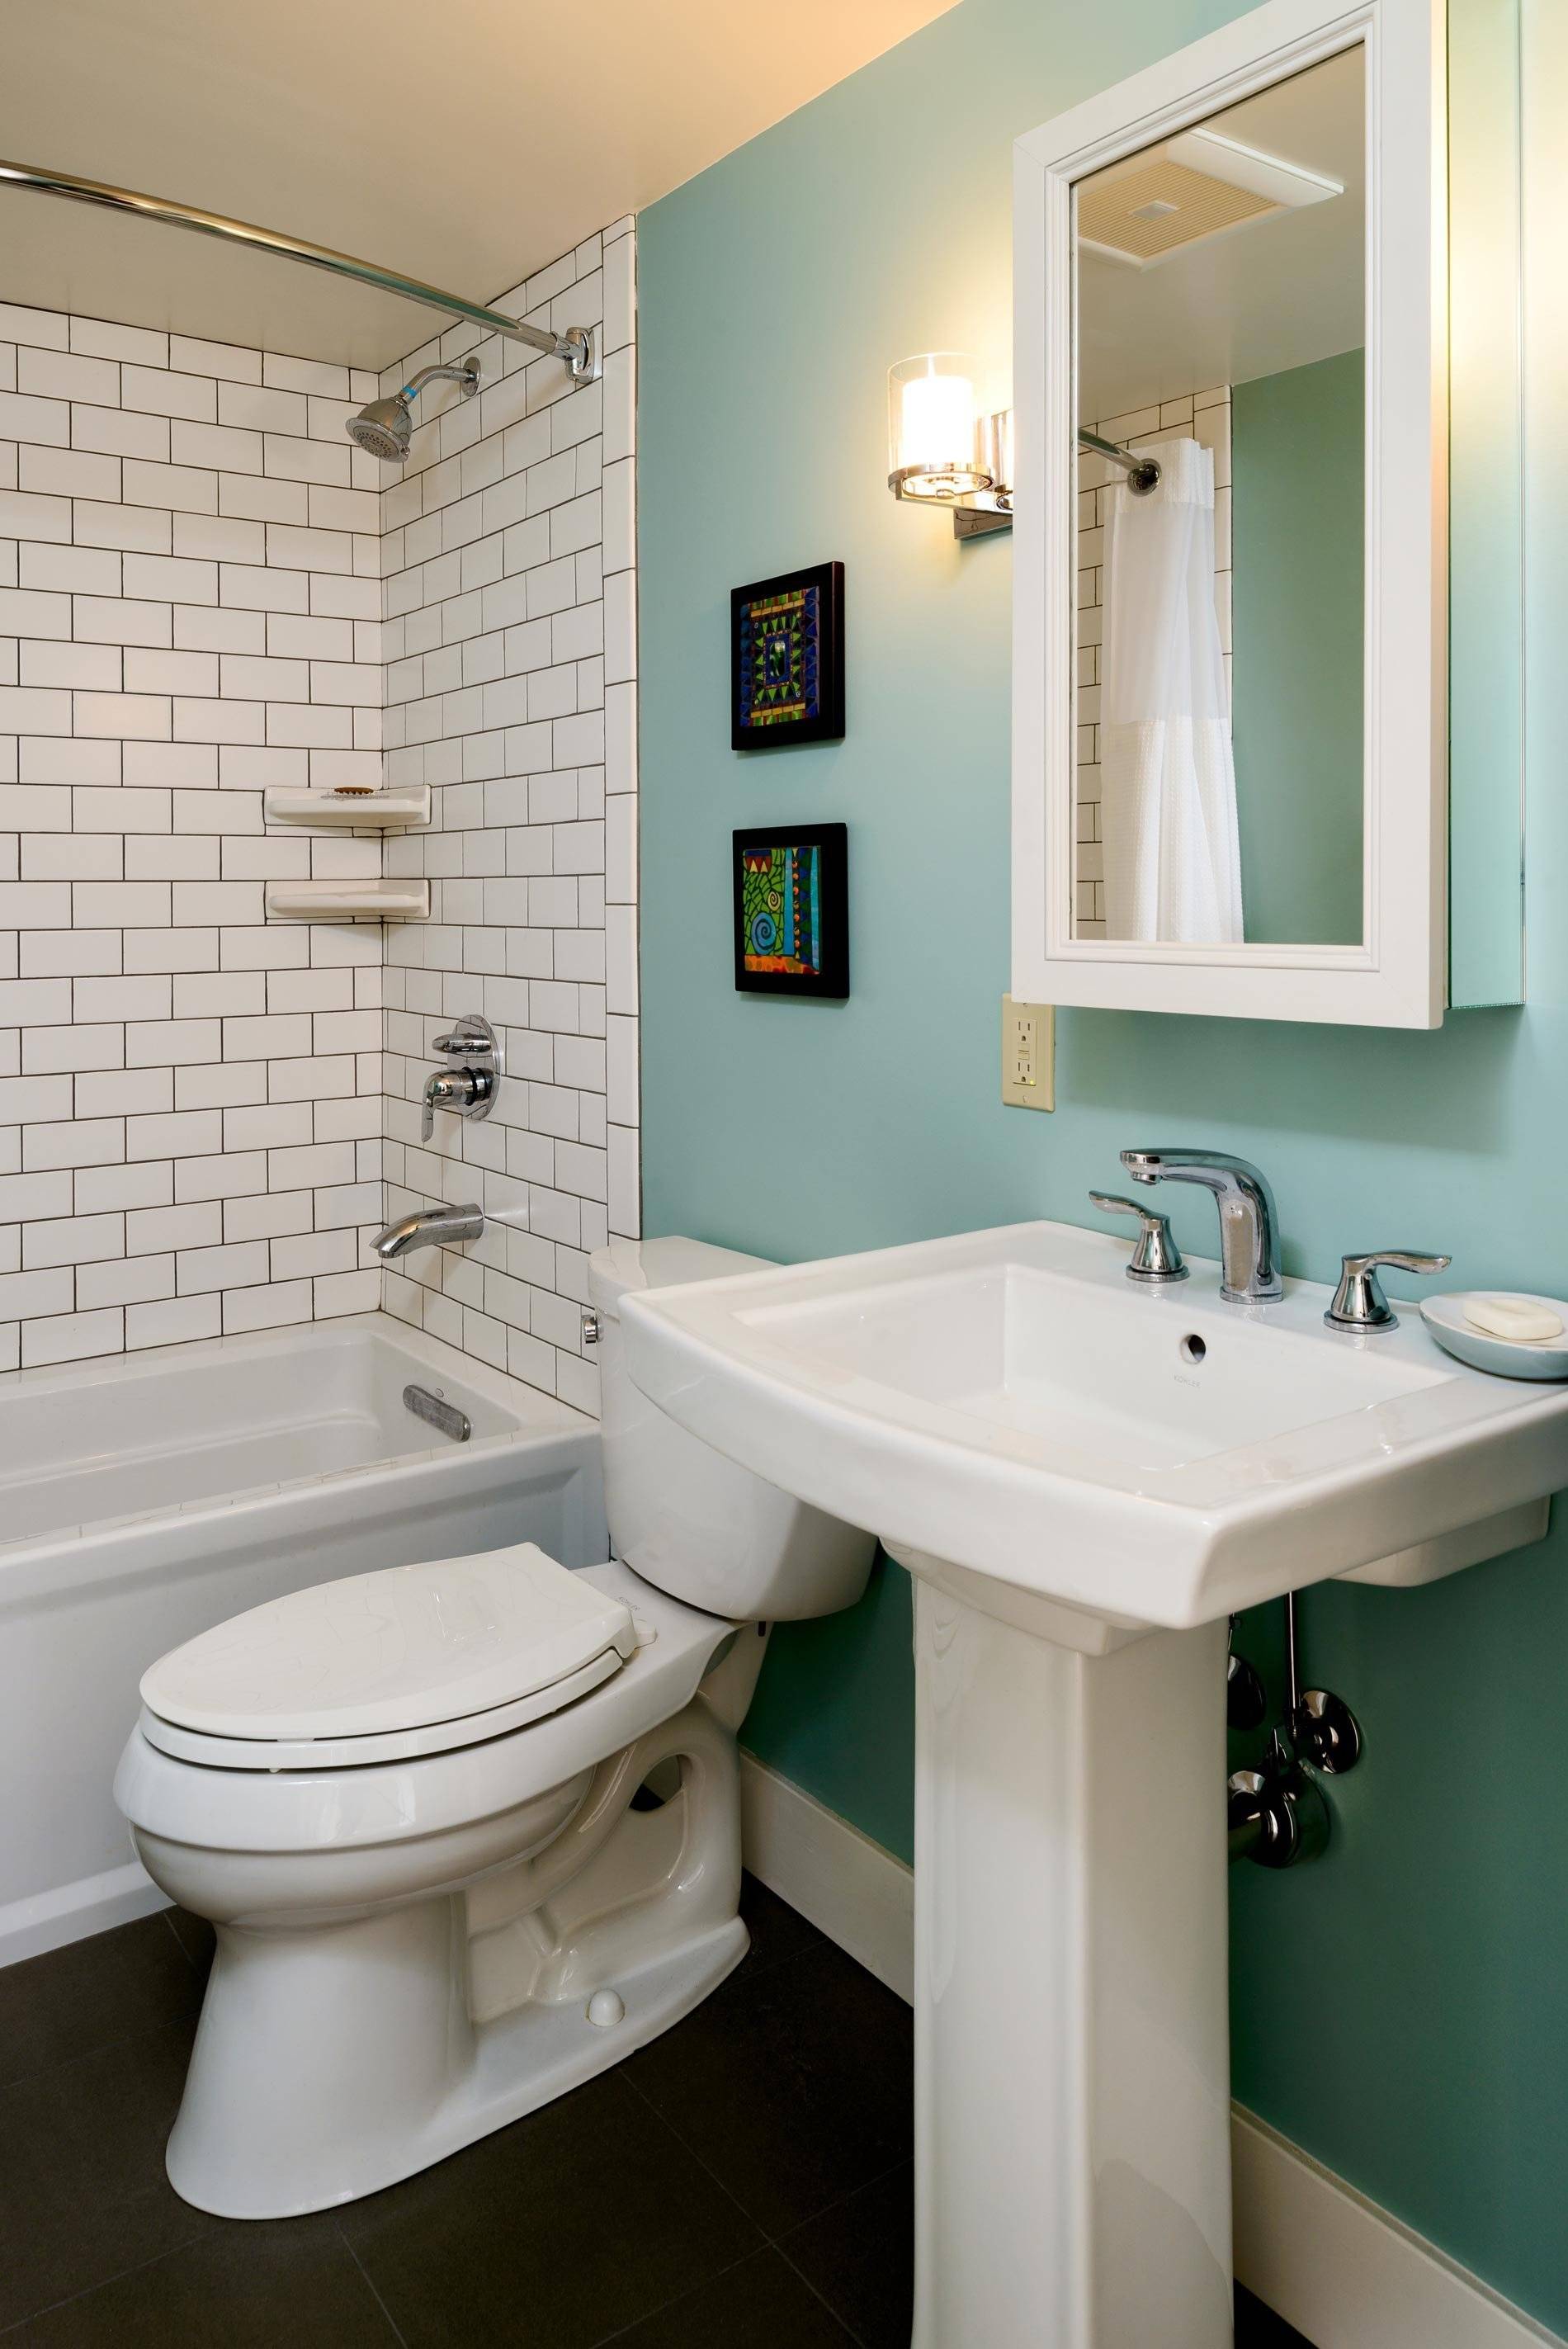 Ванная комната дешево и красиво - 121 фото красивого дизайна и отделки ванной комнаты плиткой и стеновыми панелями своими руками